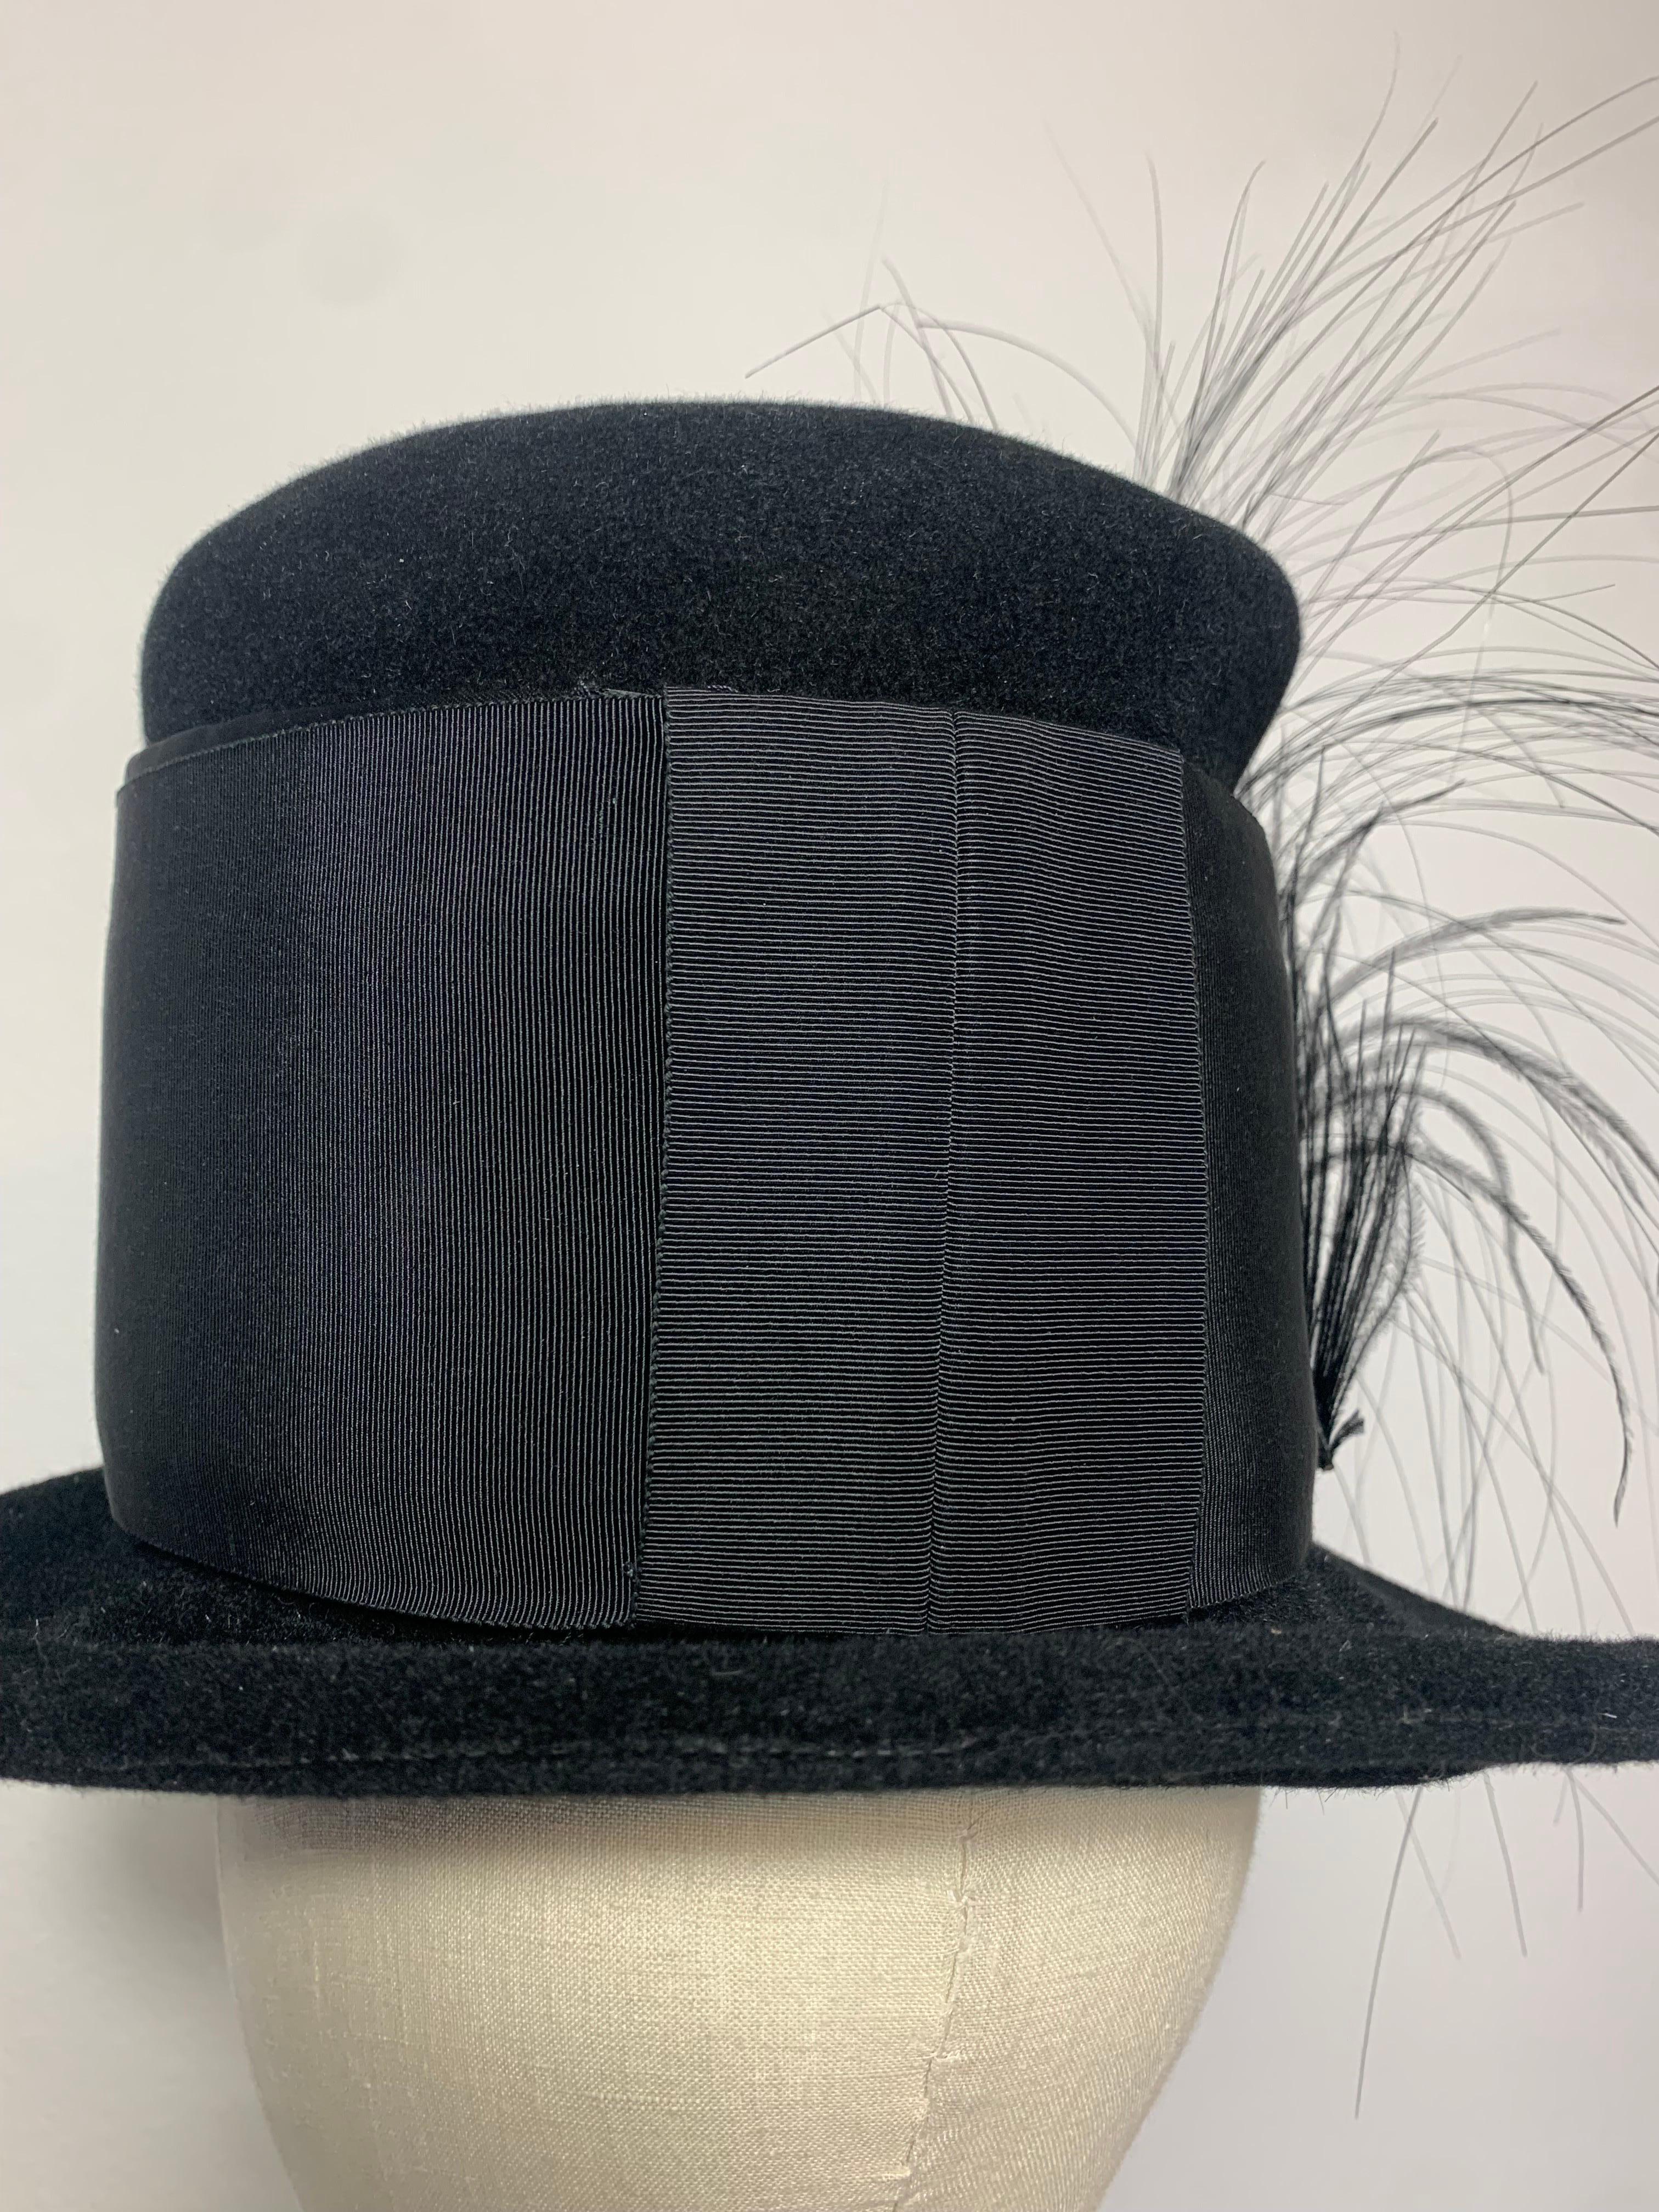 Maison Michel Black Fur Felt Short-Brim Tall Crown Hat w Extravagant Feathers  For Sale 1